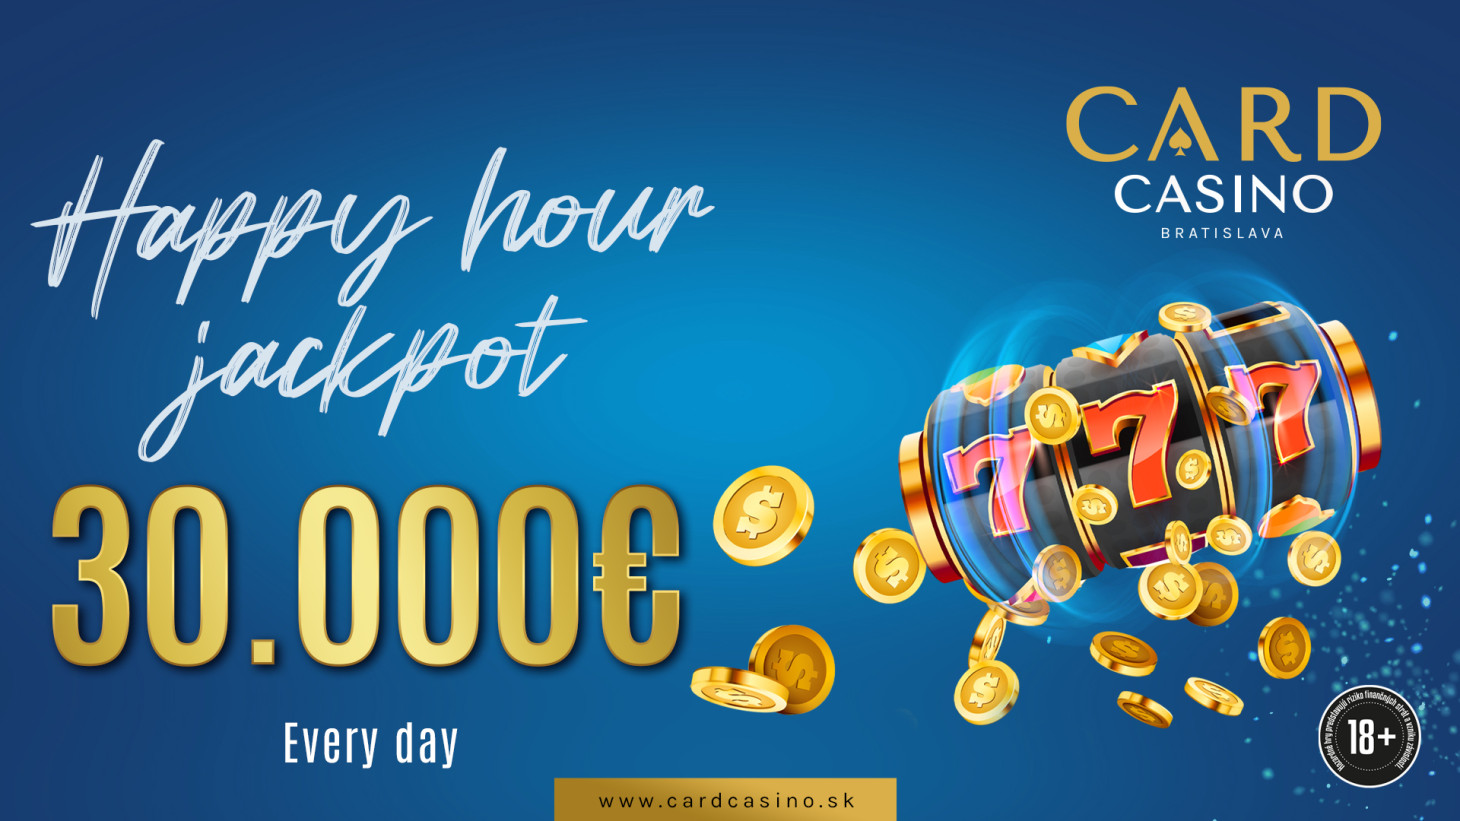 €30,000 in Happy Hour Jackpots!